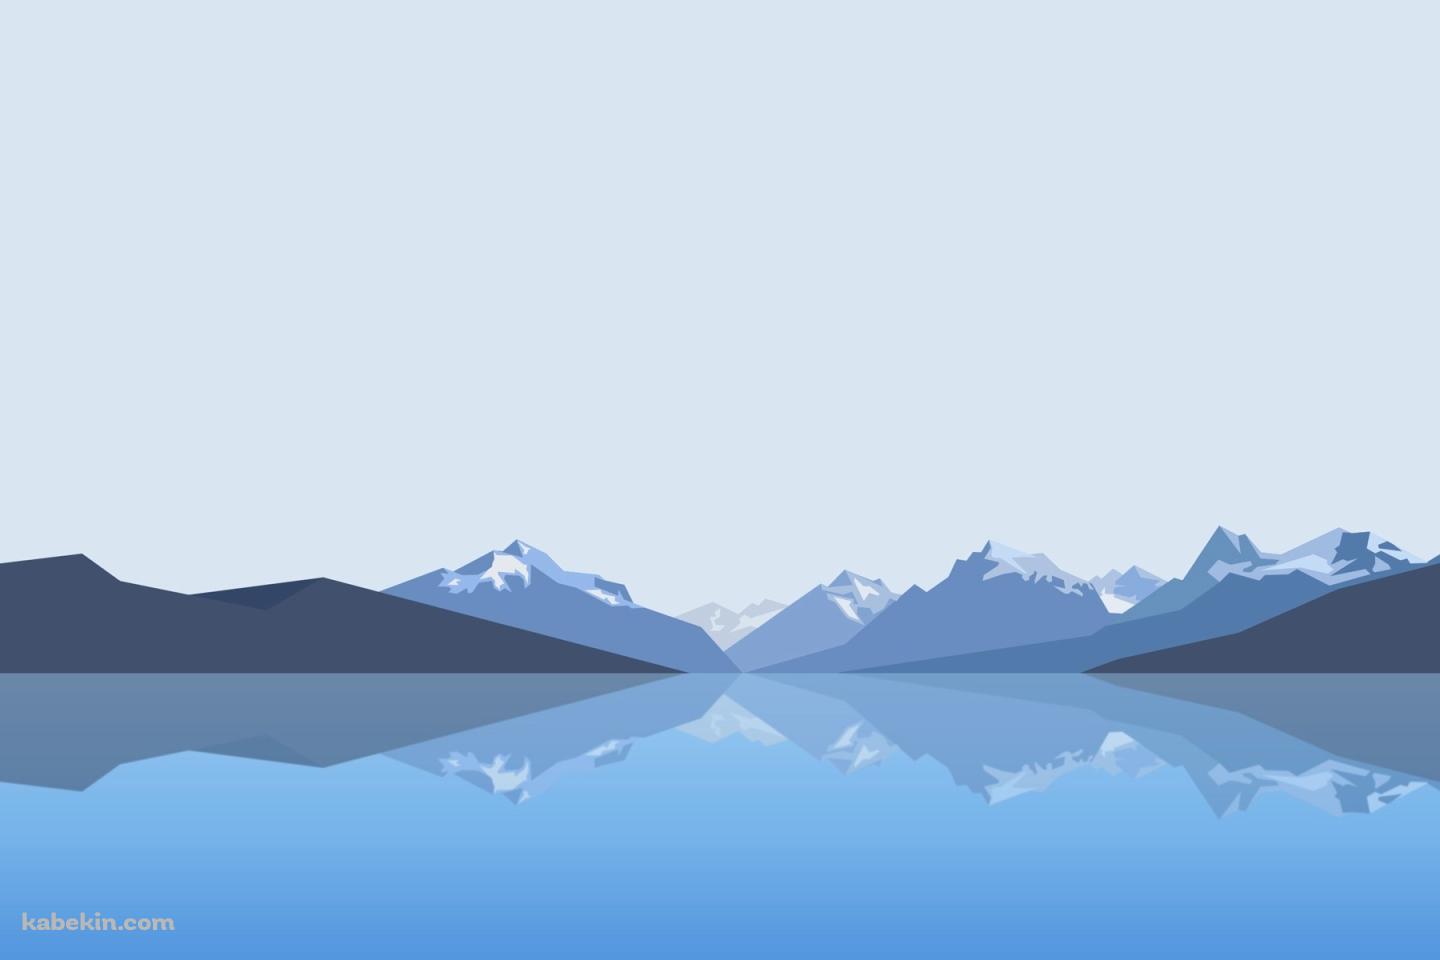 湖と山と空の壁紙(1440px x 960px) 高画質 PC・デスクトップ用